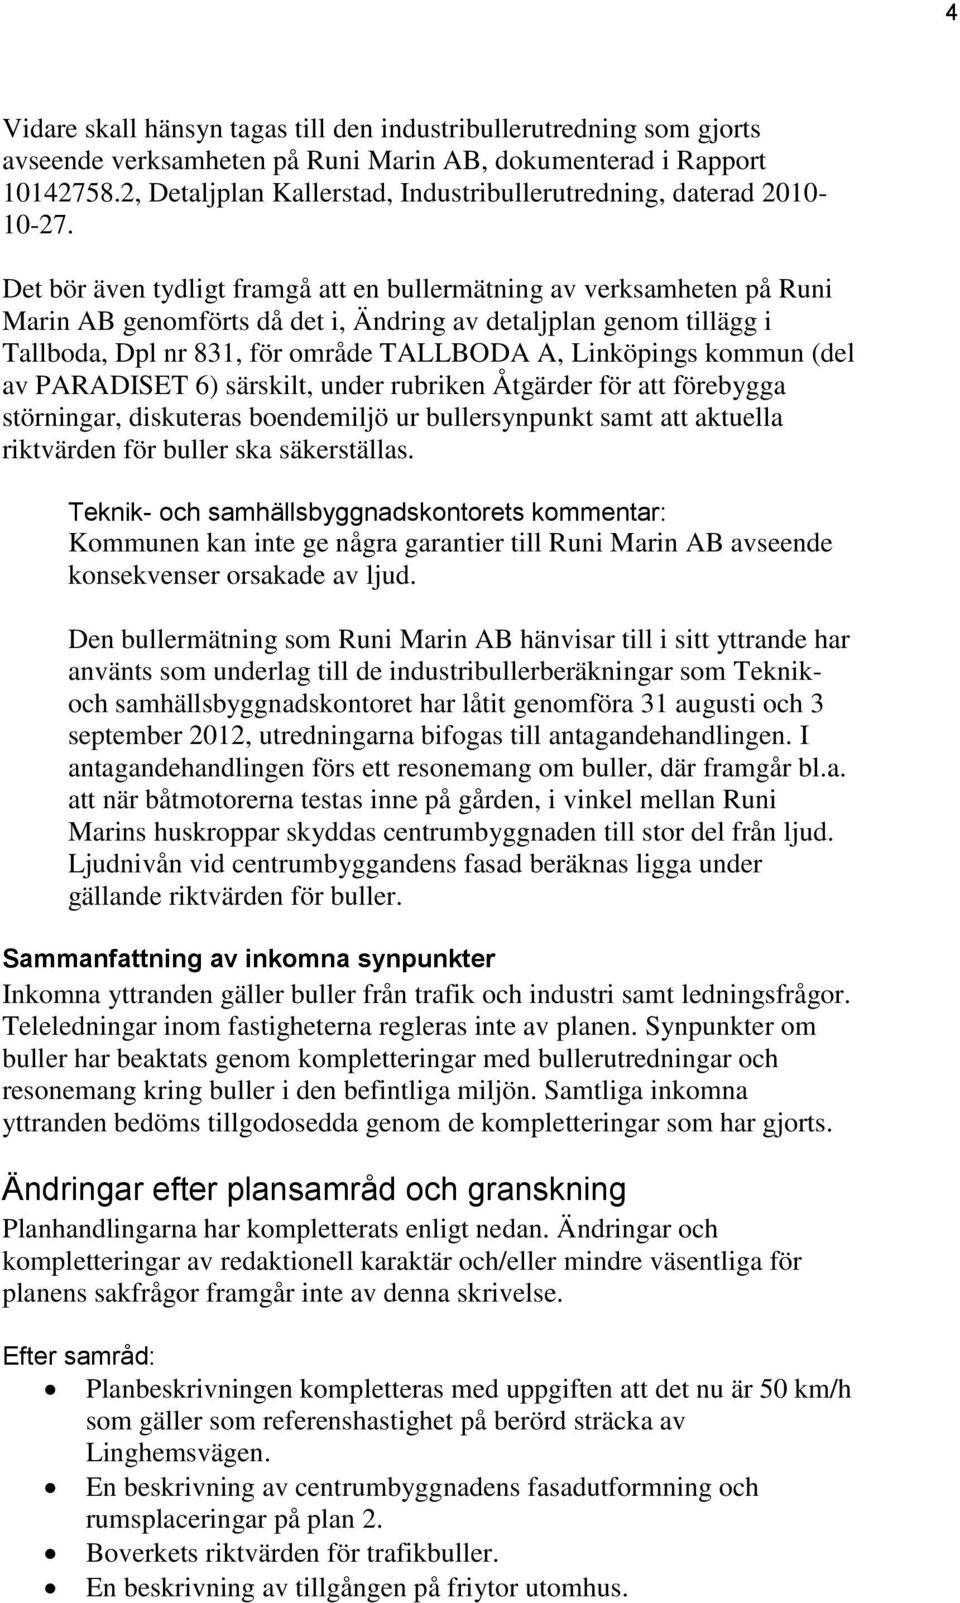 Det bör även tydligt framgå att en bullermätning av verksamheten på Runi Marin AB genomförts då det i, Ändring av detaljplan genom tillägg i Tallboda, Dpl nr 831, för område TALLBODA A, Linköpings